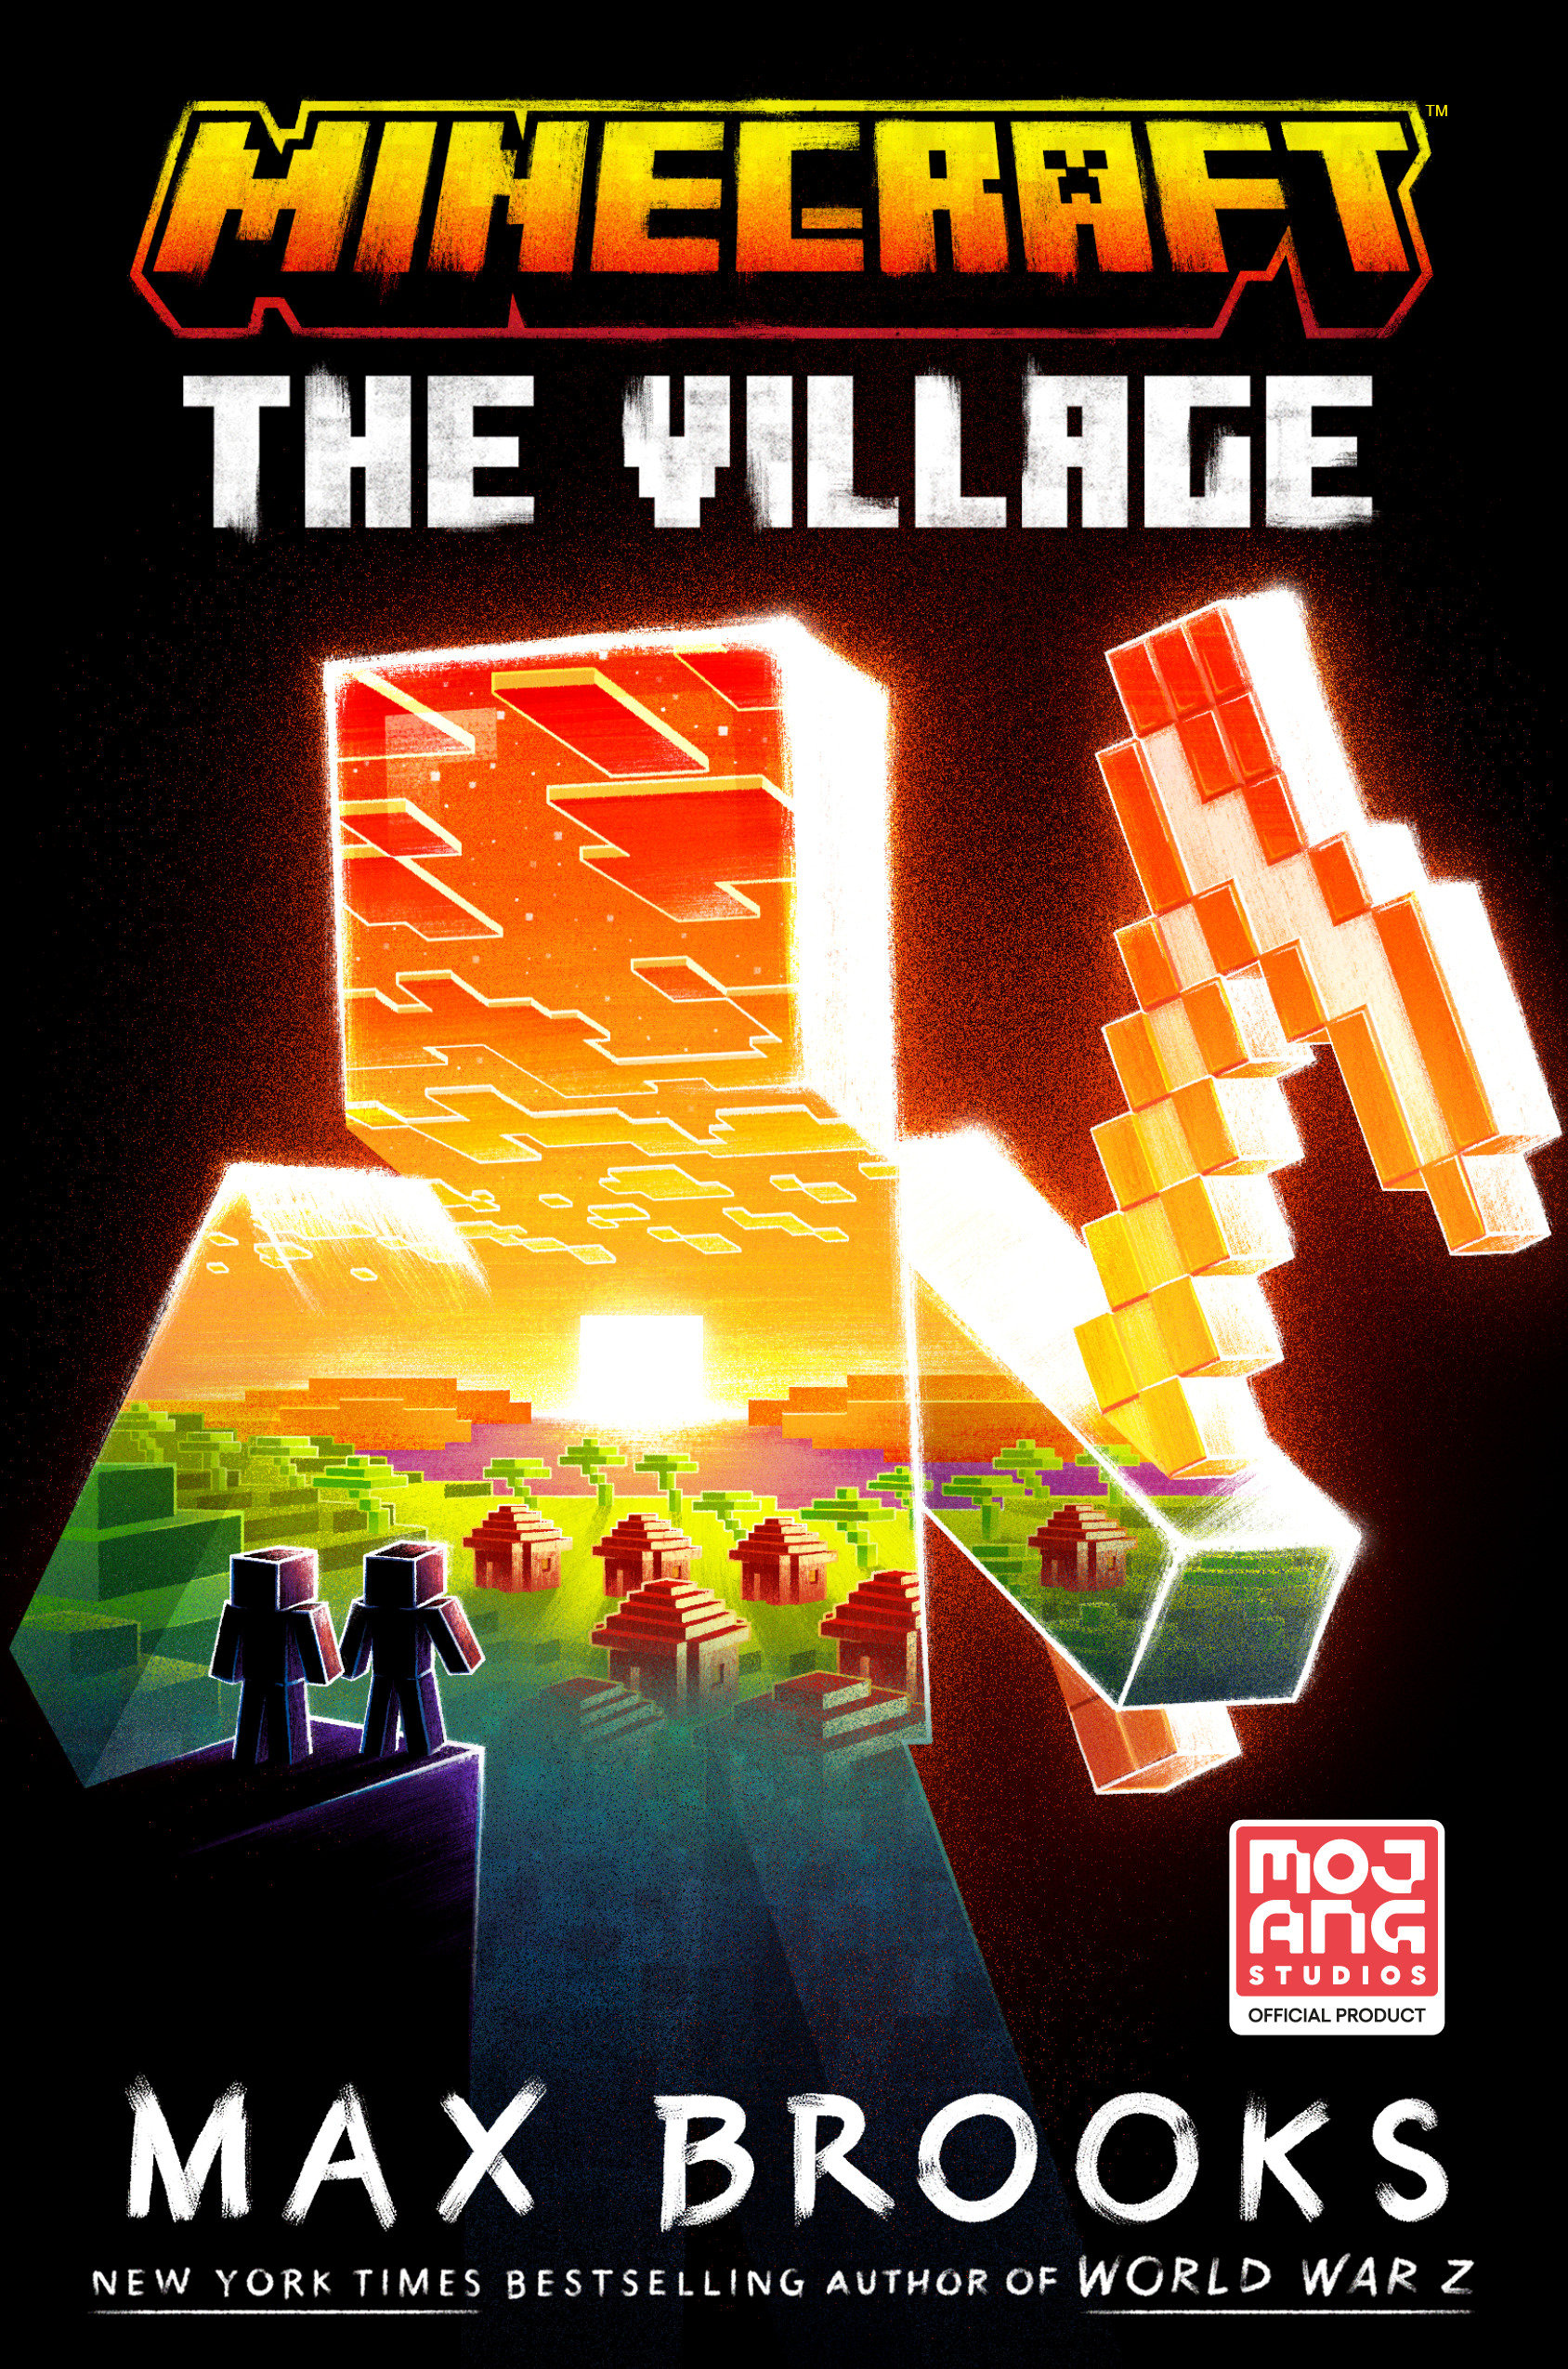 Minecraft Hardcover Book Volume 29 The Village